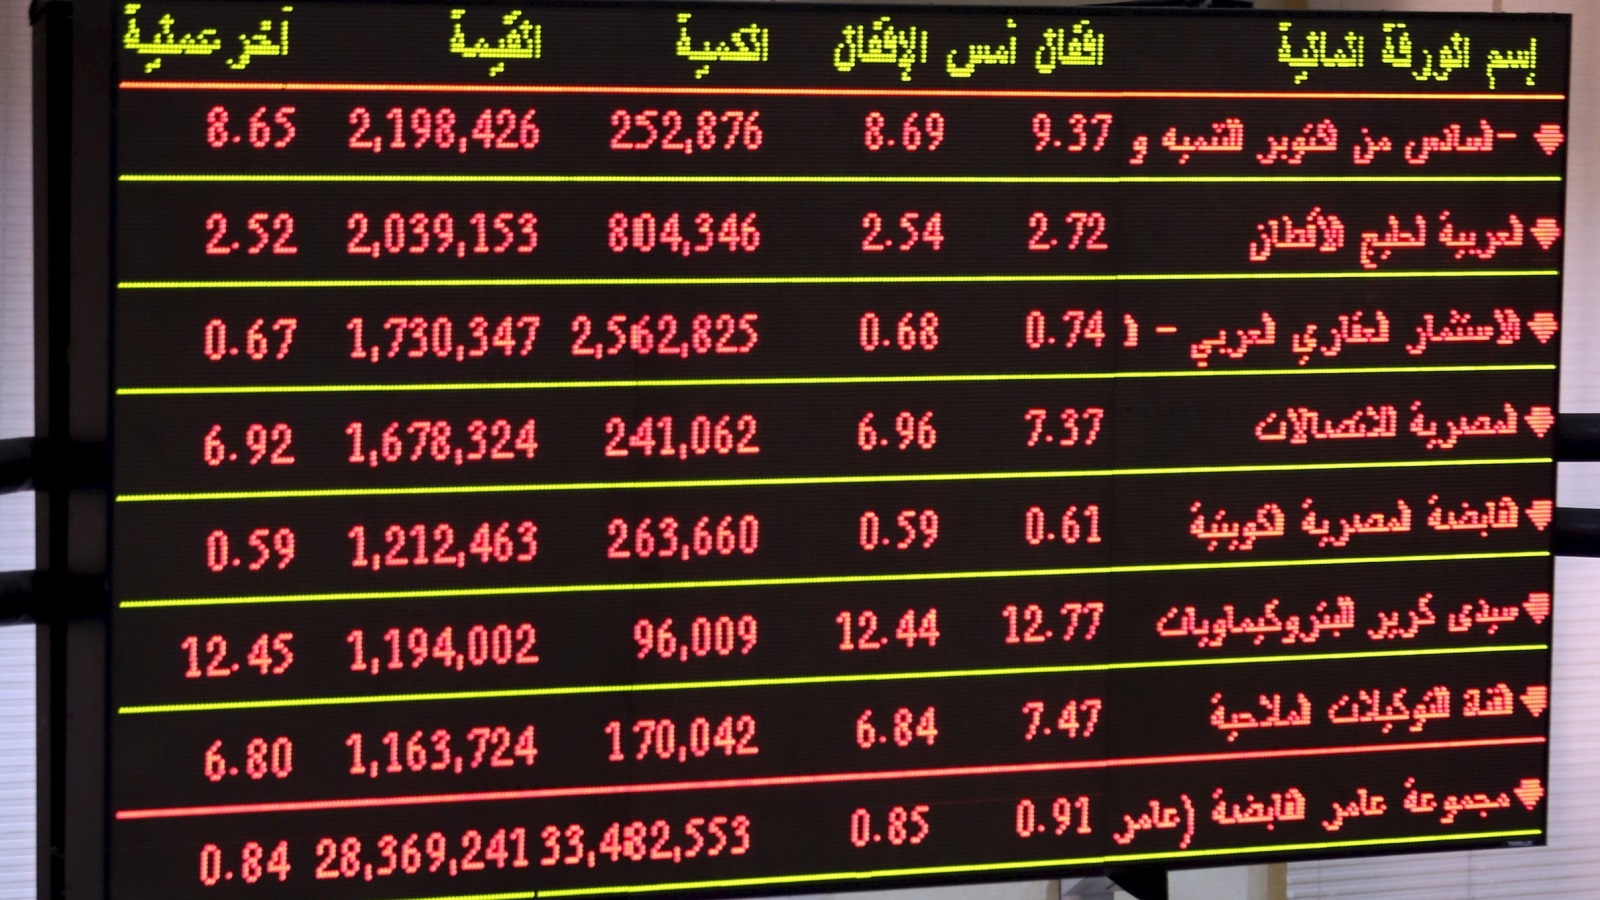 هوى الجنيه المصري أمام الدولار إلى مستويات قياسية؛ فوفقًا لتقرير البنك الدولي 